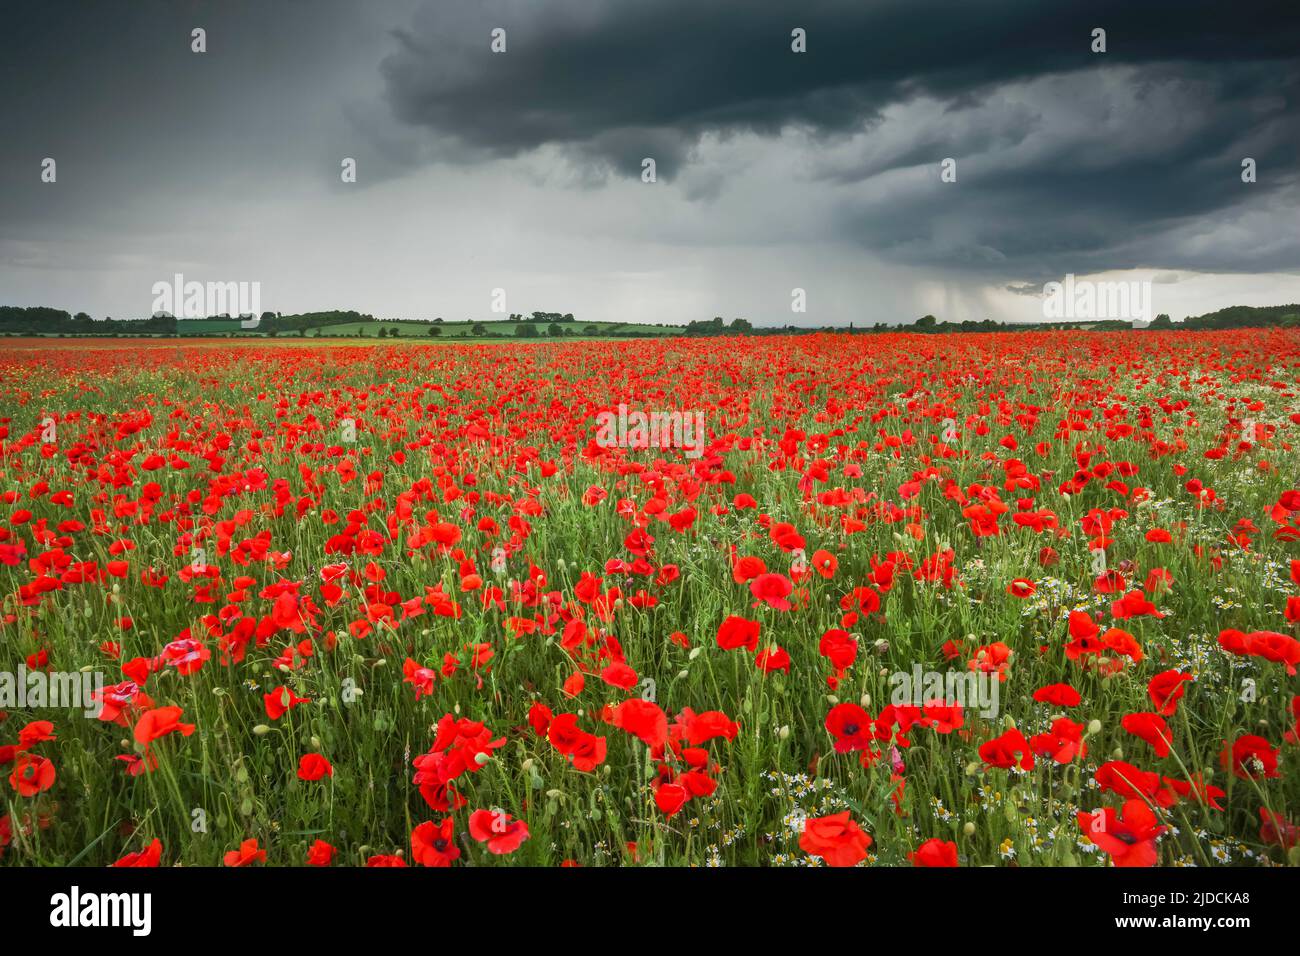 Poppy Field, Oxfordshire, Regno Unito. Una tempesta che si avvicina scurisce il cielo creando una calma erie tra i papaveri, Credit:Robin Bush / Avalon Foto Stock